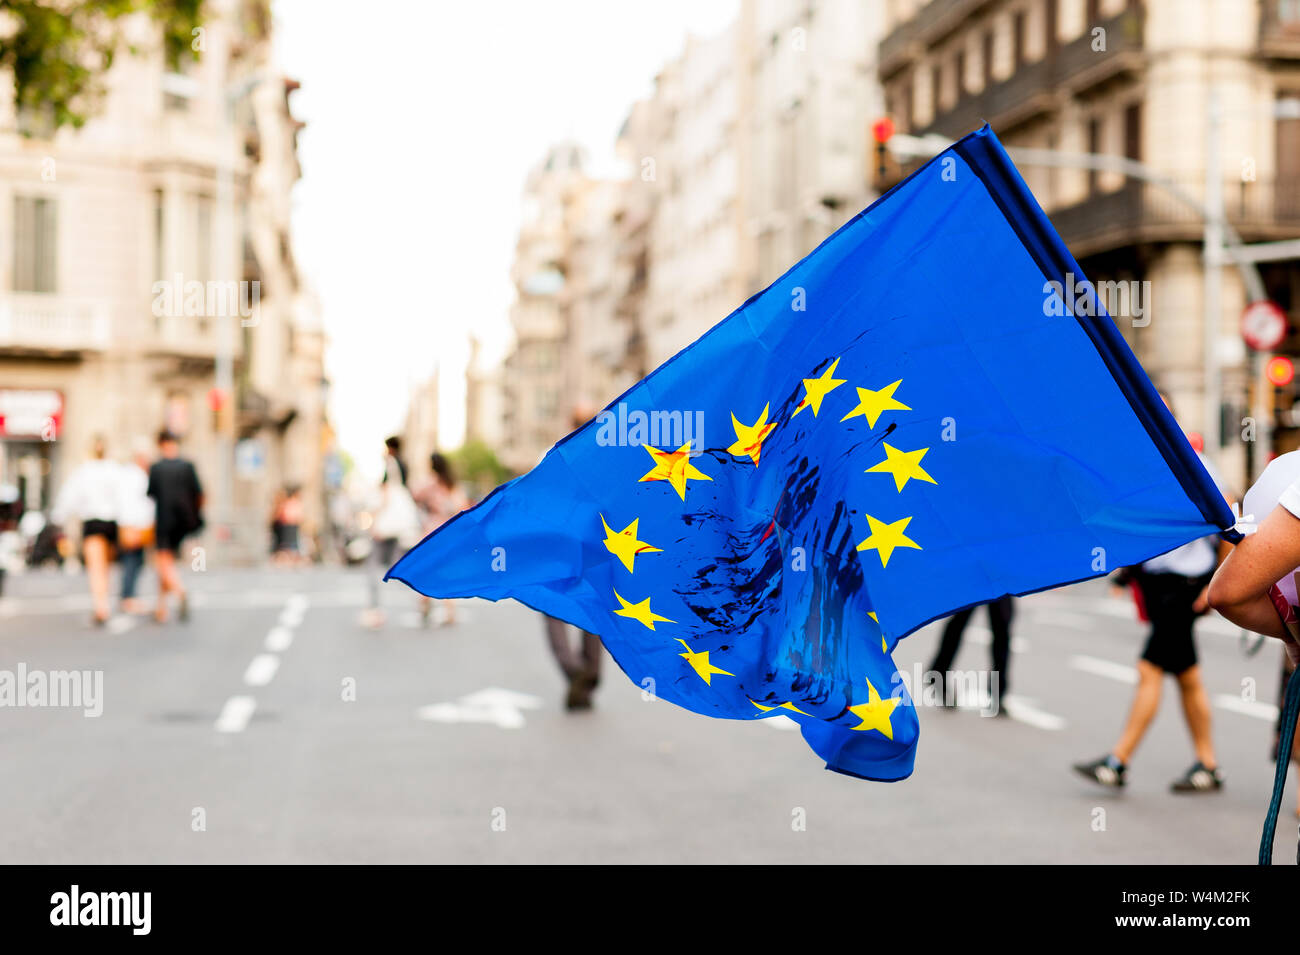 Joven camina en las calles durante el día, sosteniendo la bandera de la Unión Europea con manchas de sangre que protestaban contra las políticas de inmigración Foto de stock